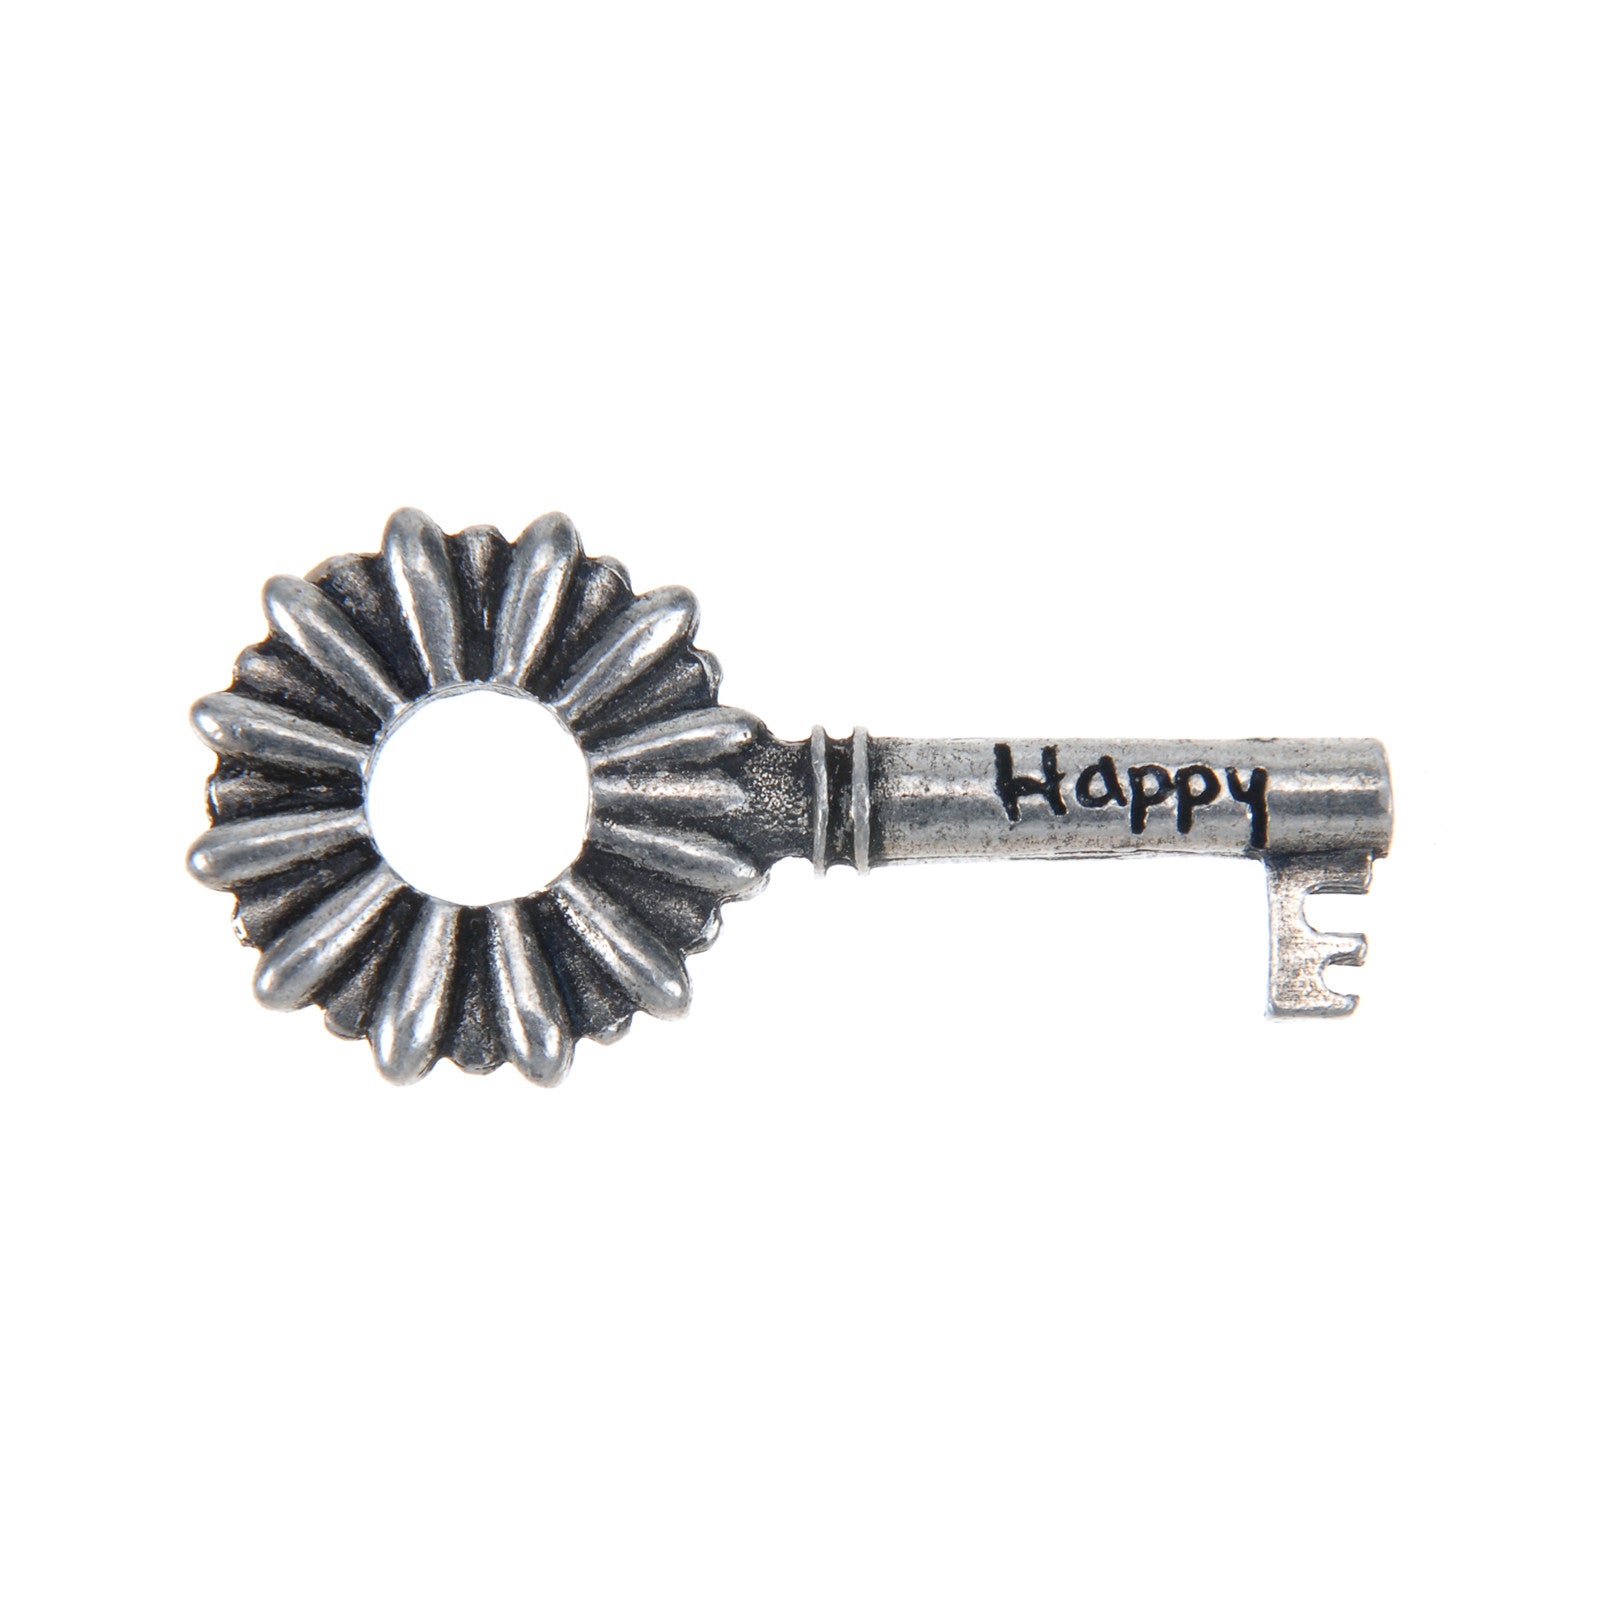 Happy Key - Whitney Howard Designs